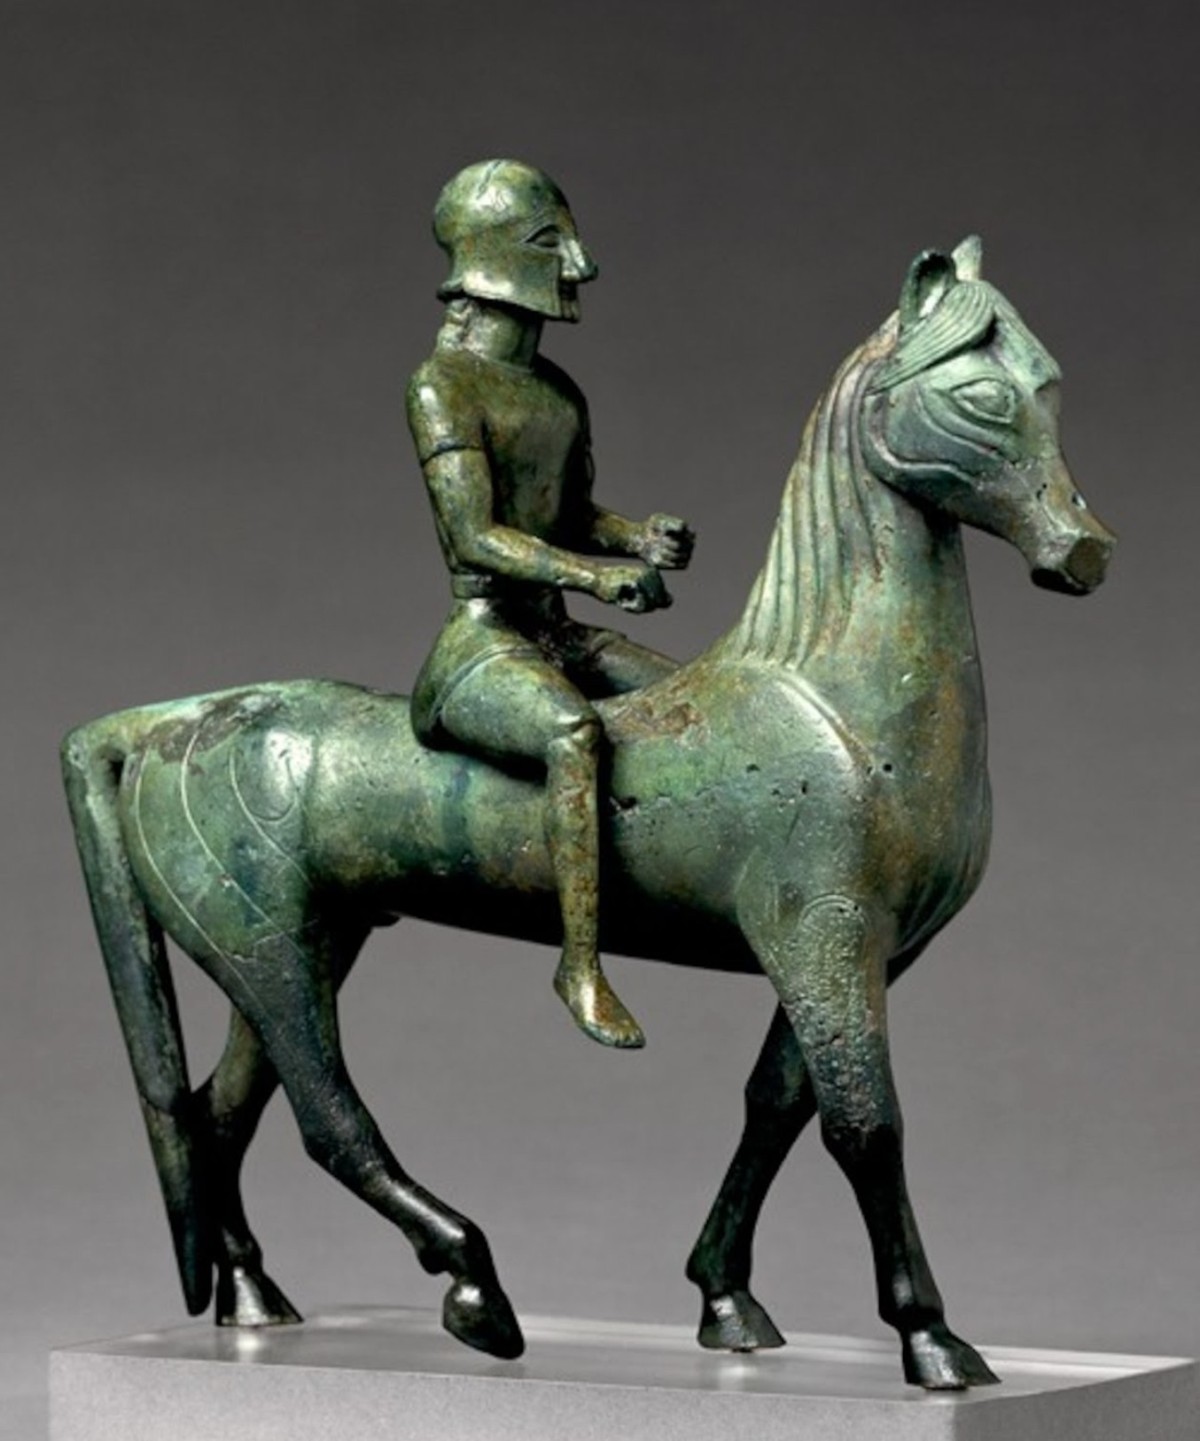 At üzerindeki savaşçının bronz heykeli